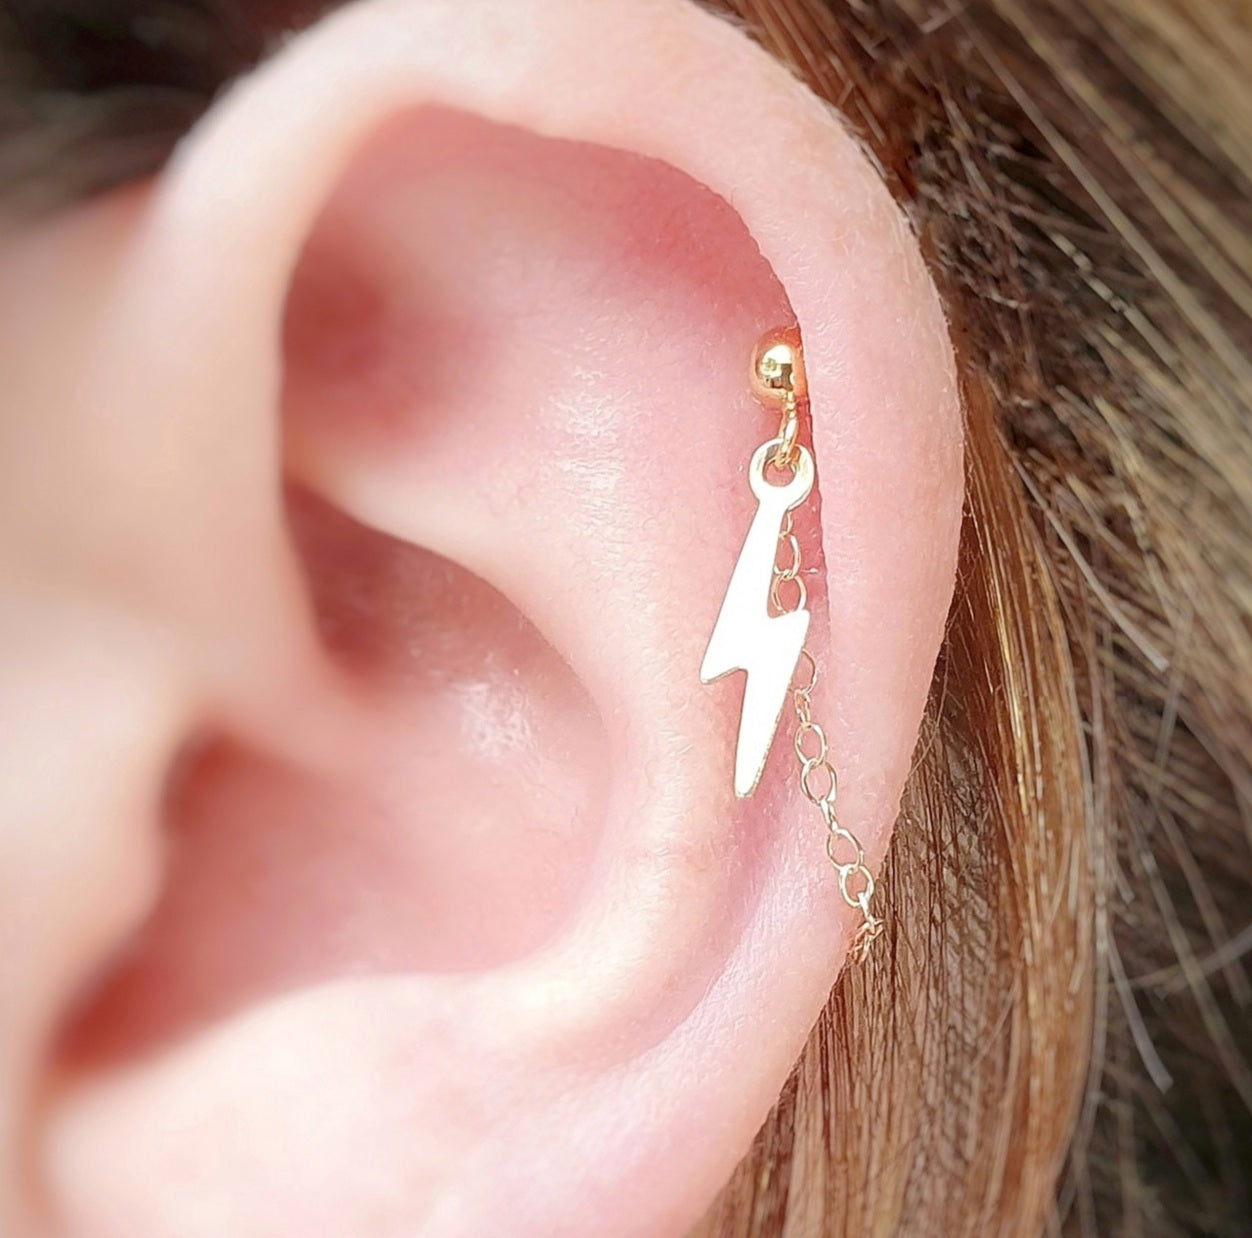 Lightning bolt earring helix cartilage gold